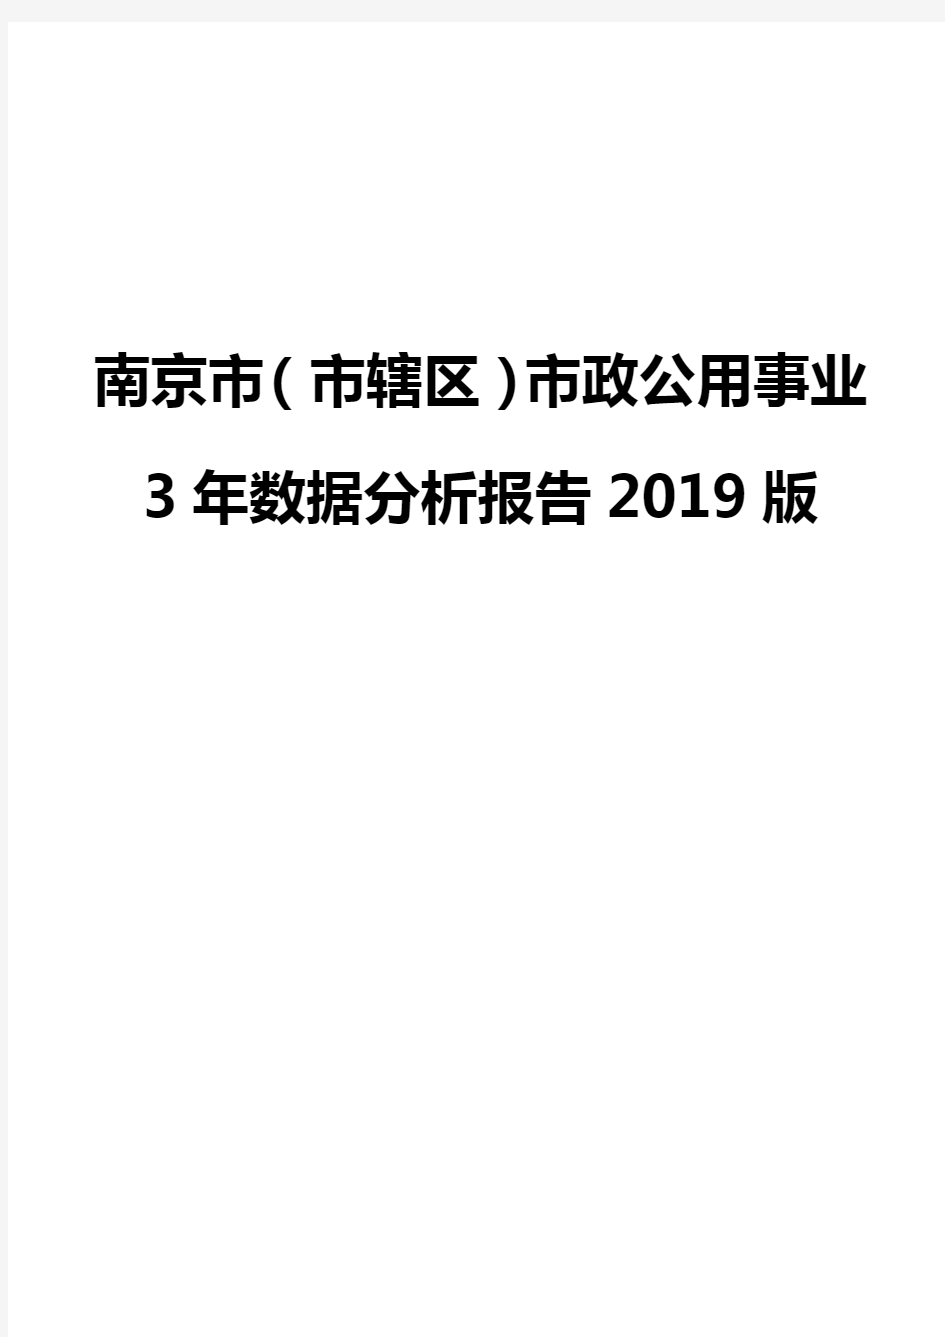 南京市(市辖区)市政公用事业3年数据分析报告2019版